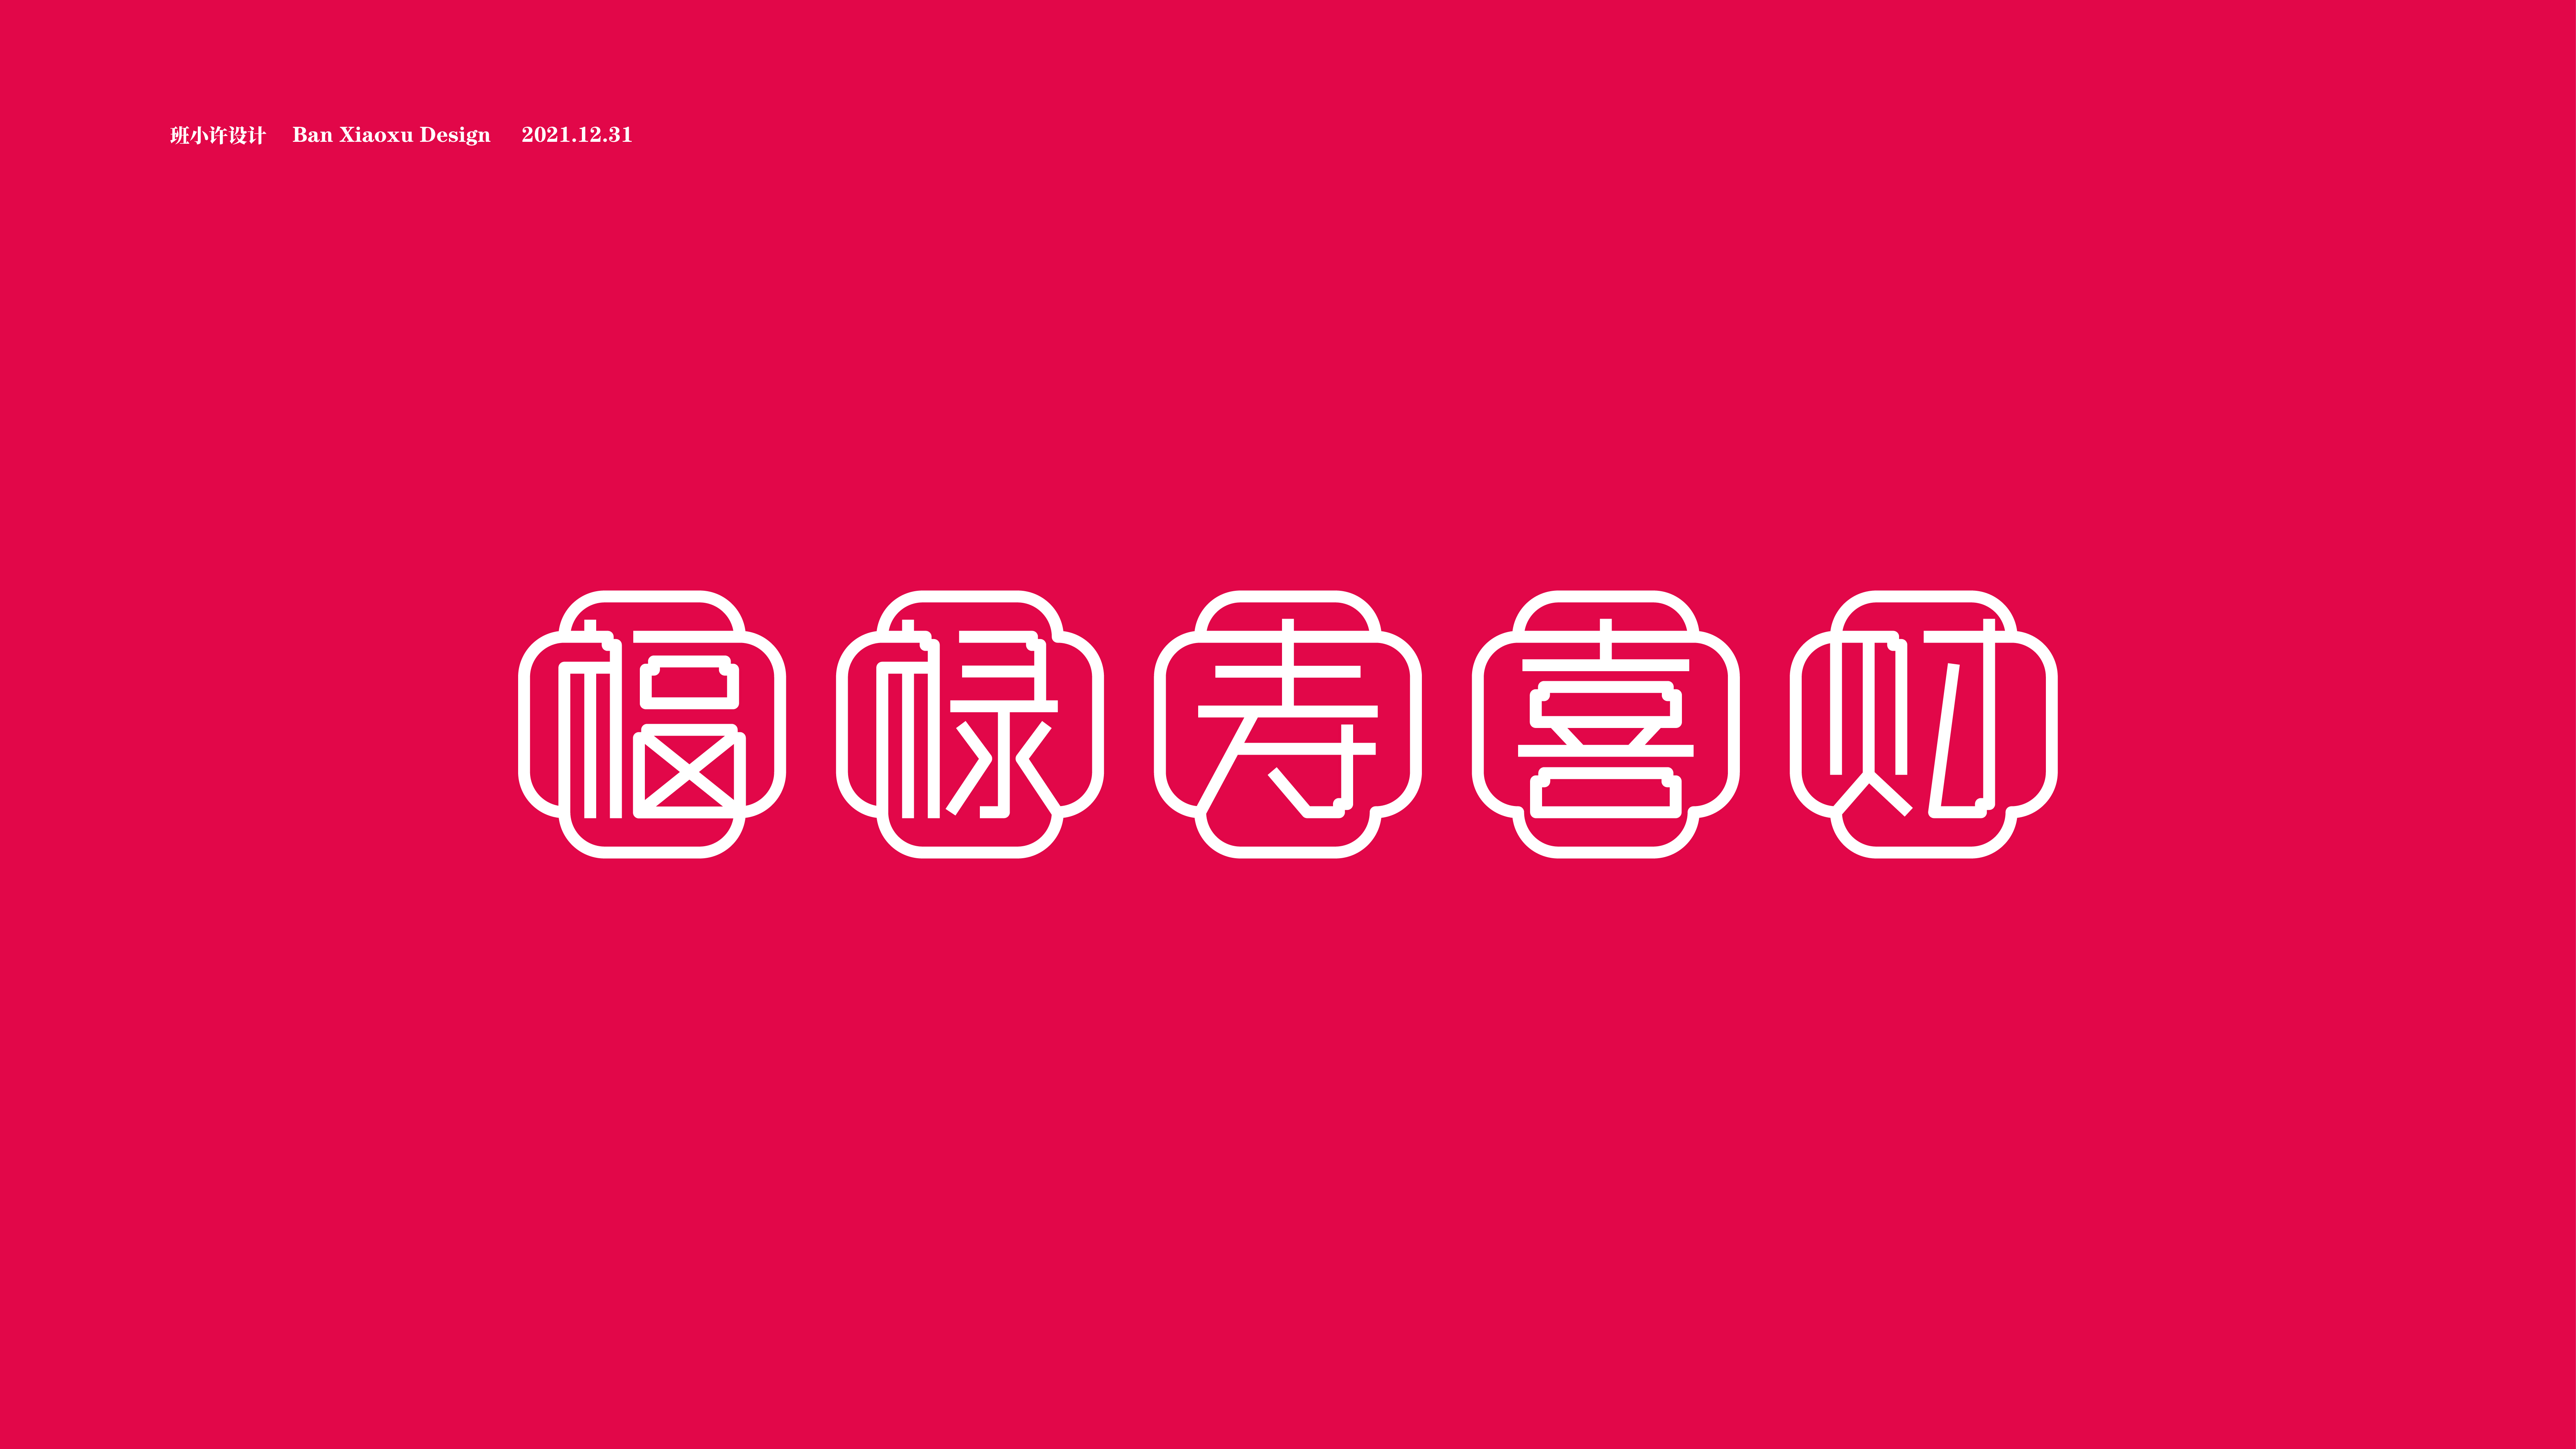 福禄寿喜财字体设计图片